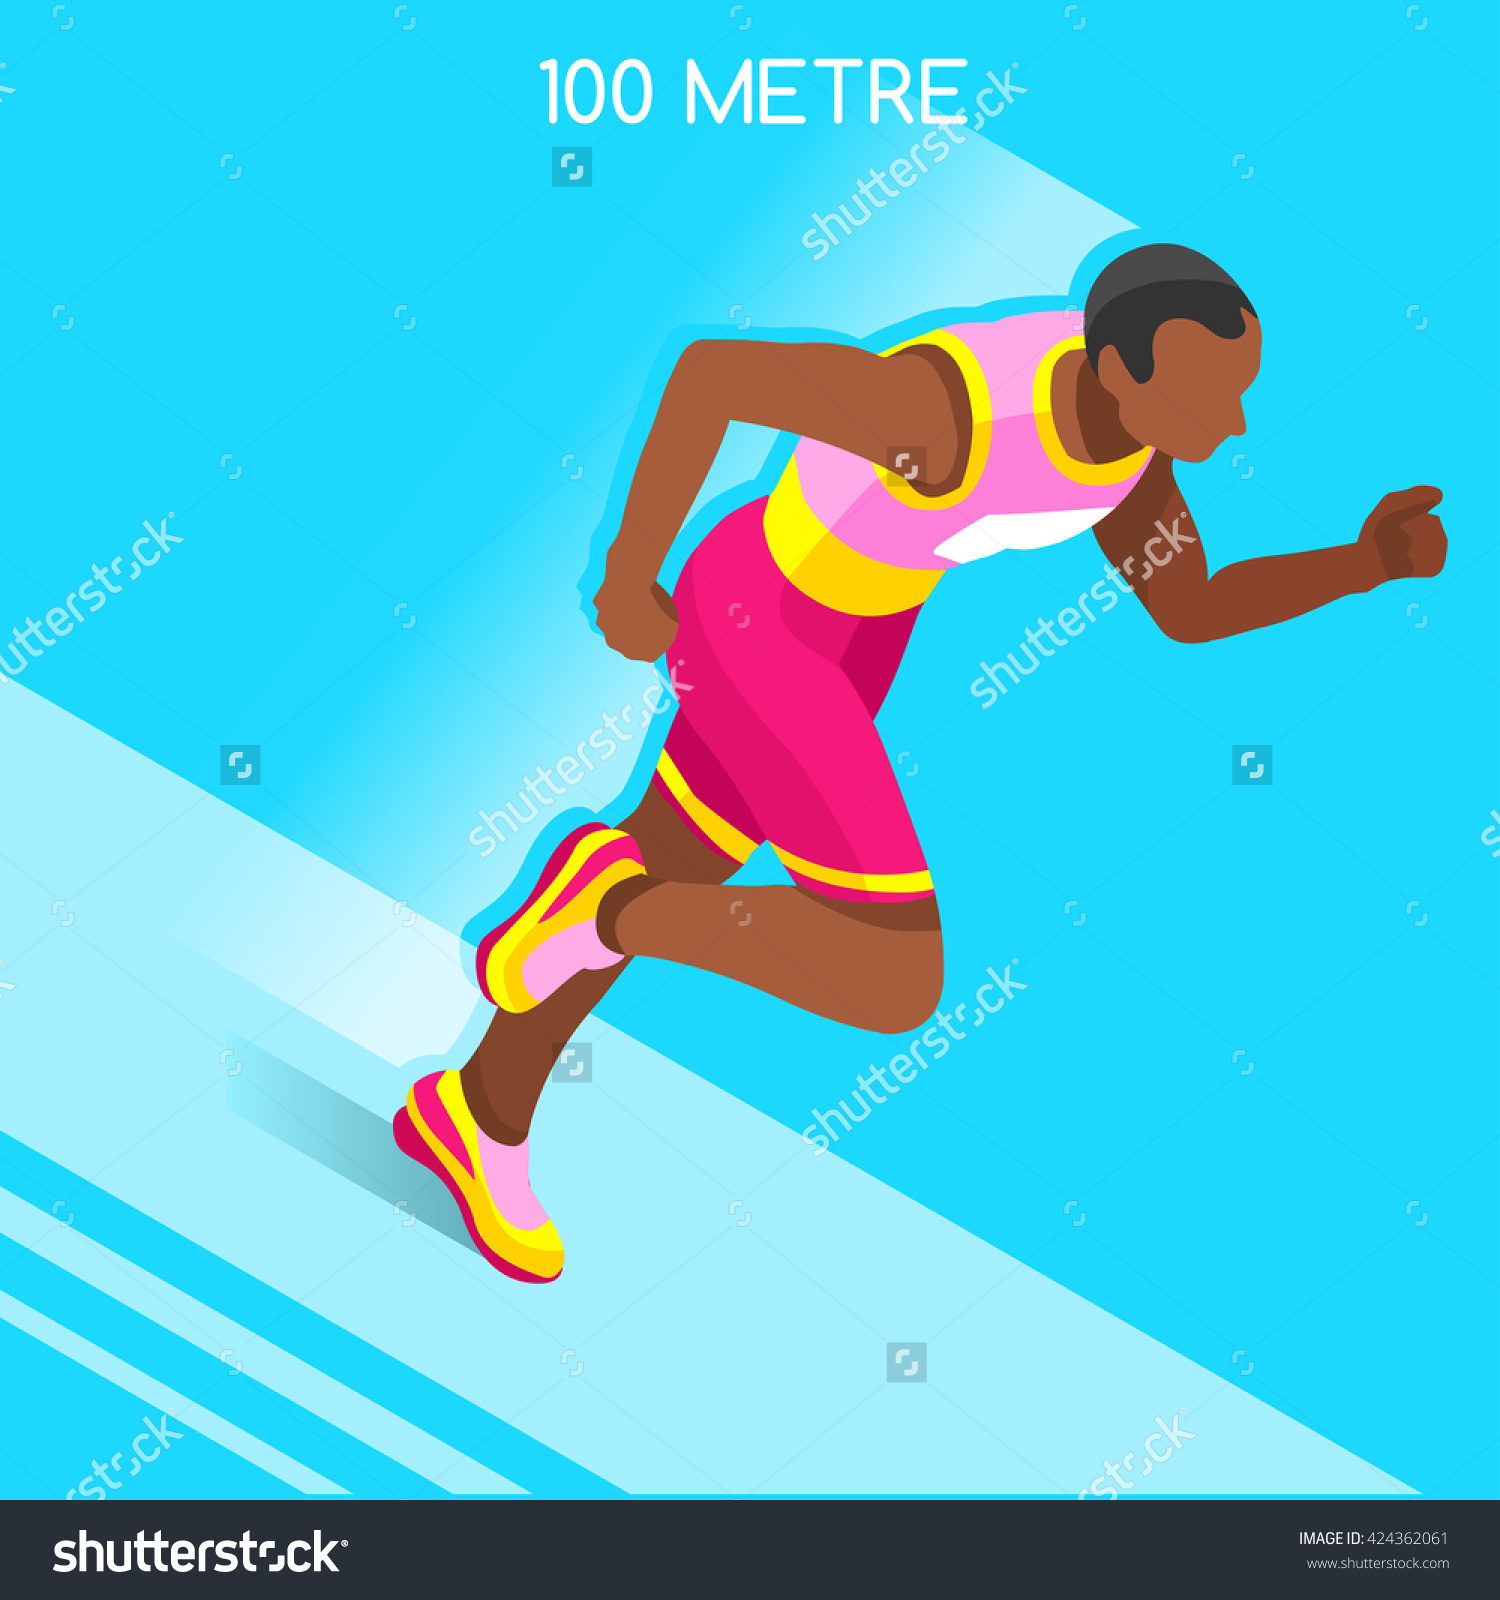 Бег на 100 метров рисунок